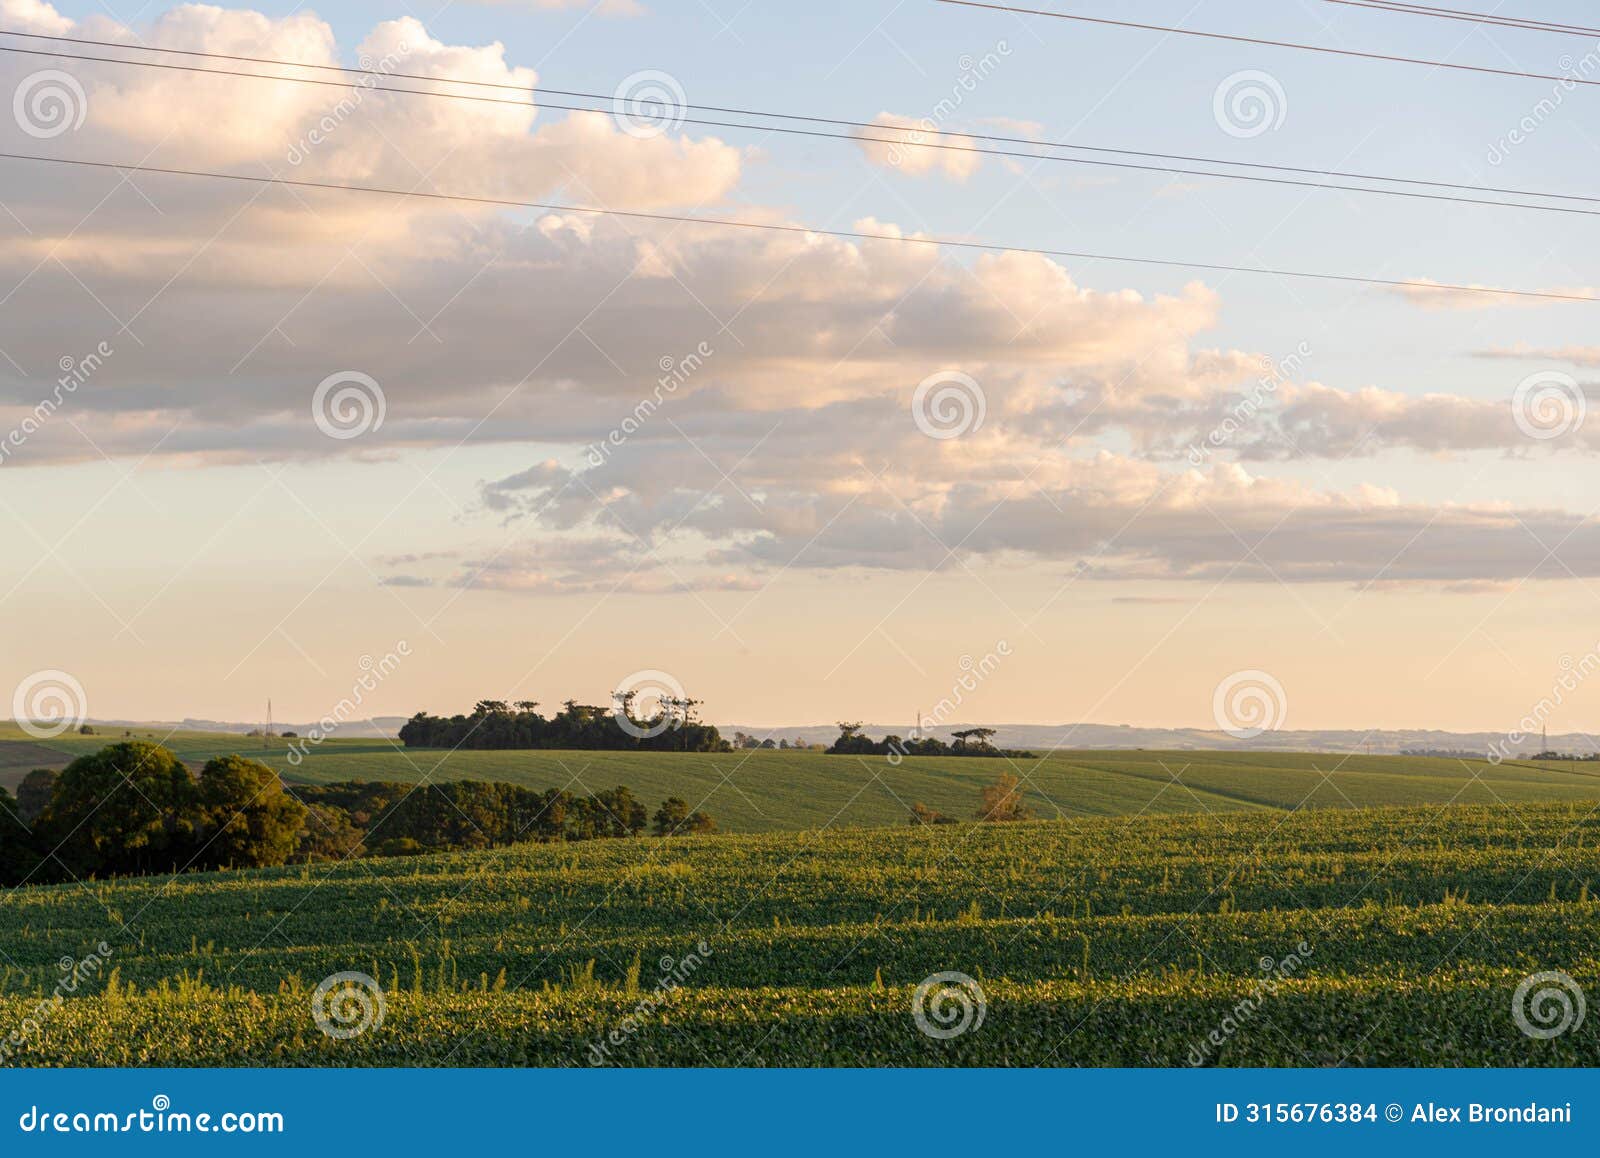 landscape of soybean fields in rio grande do sul, brazil